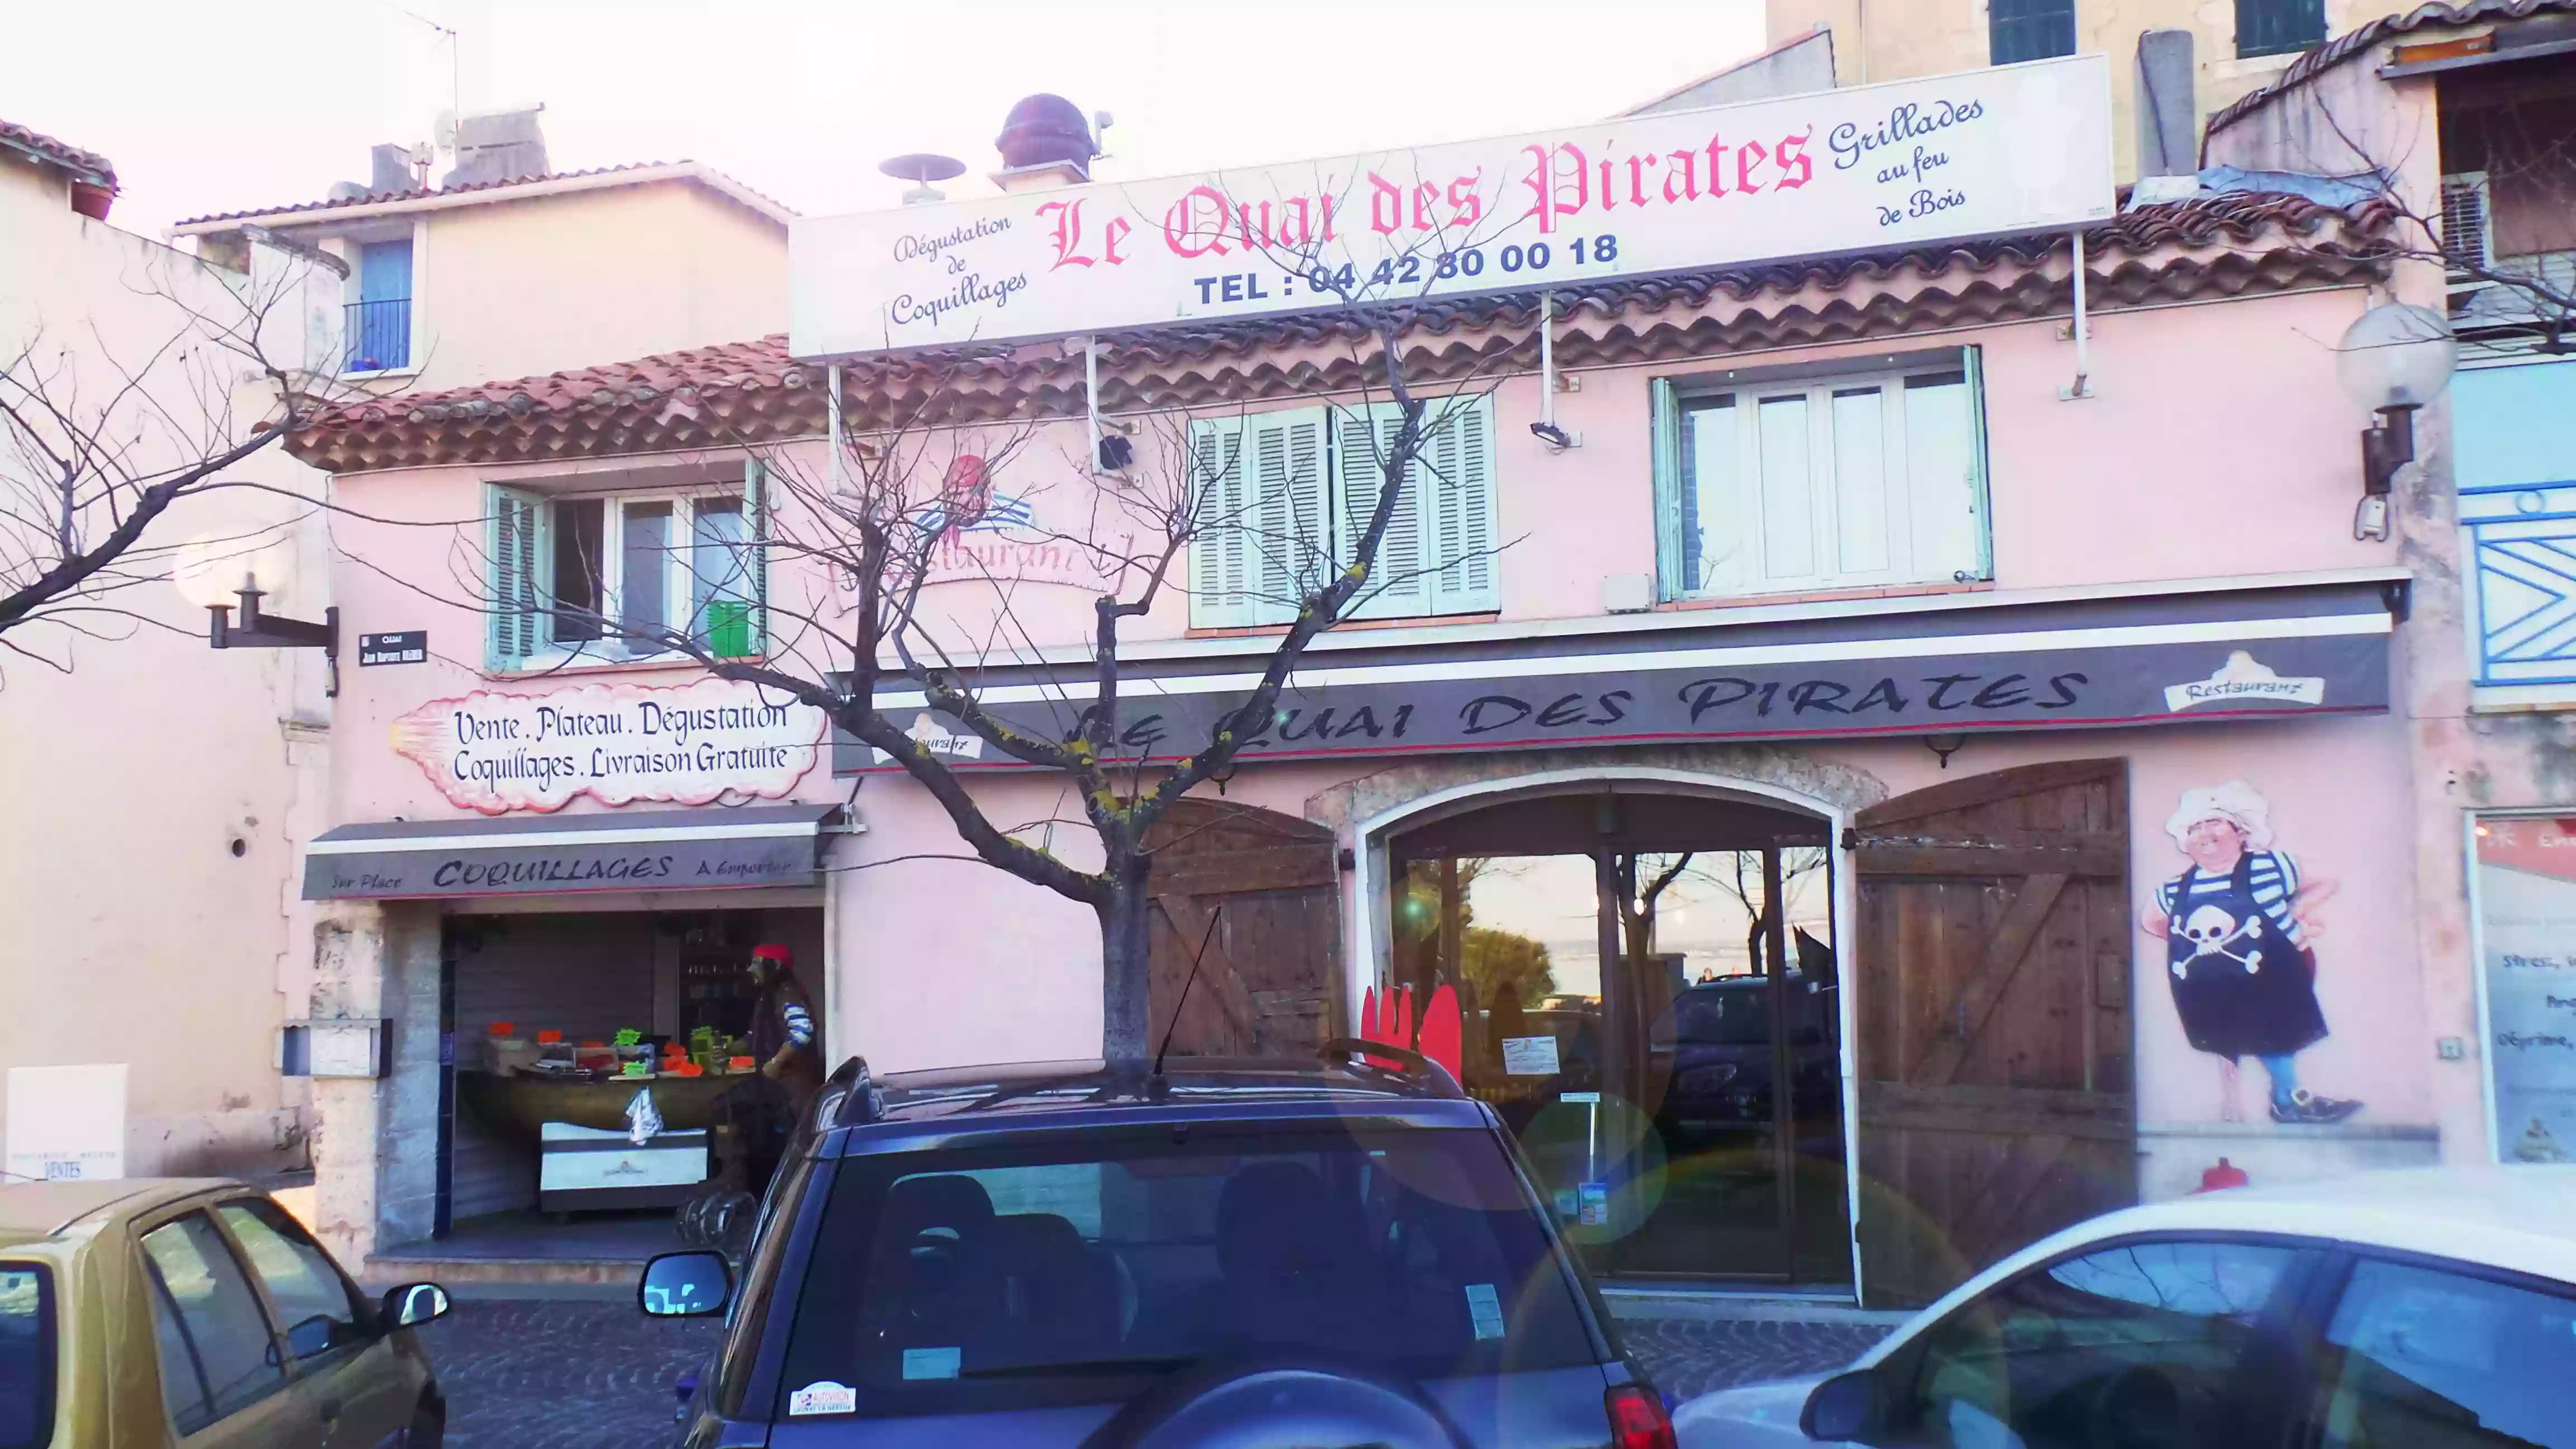 Le Quai des Pirates - Restaurant et magasin de fruits de mer et coquillages Martigues